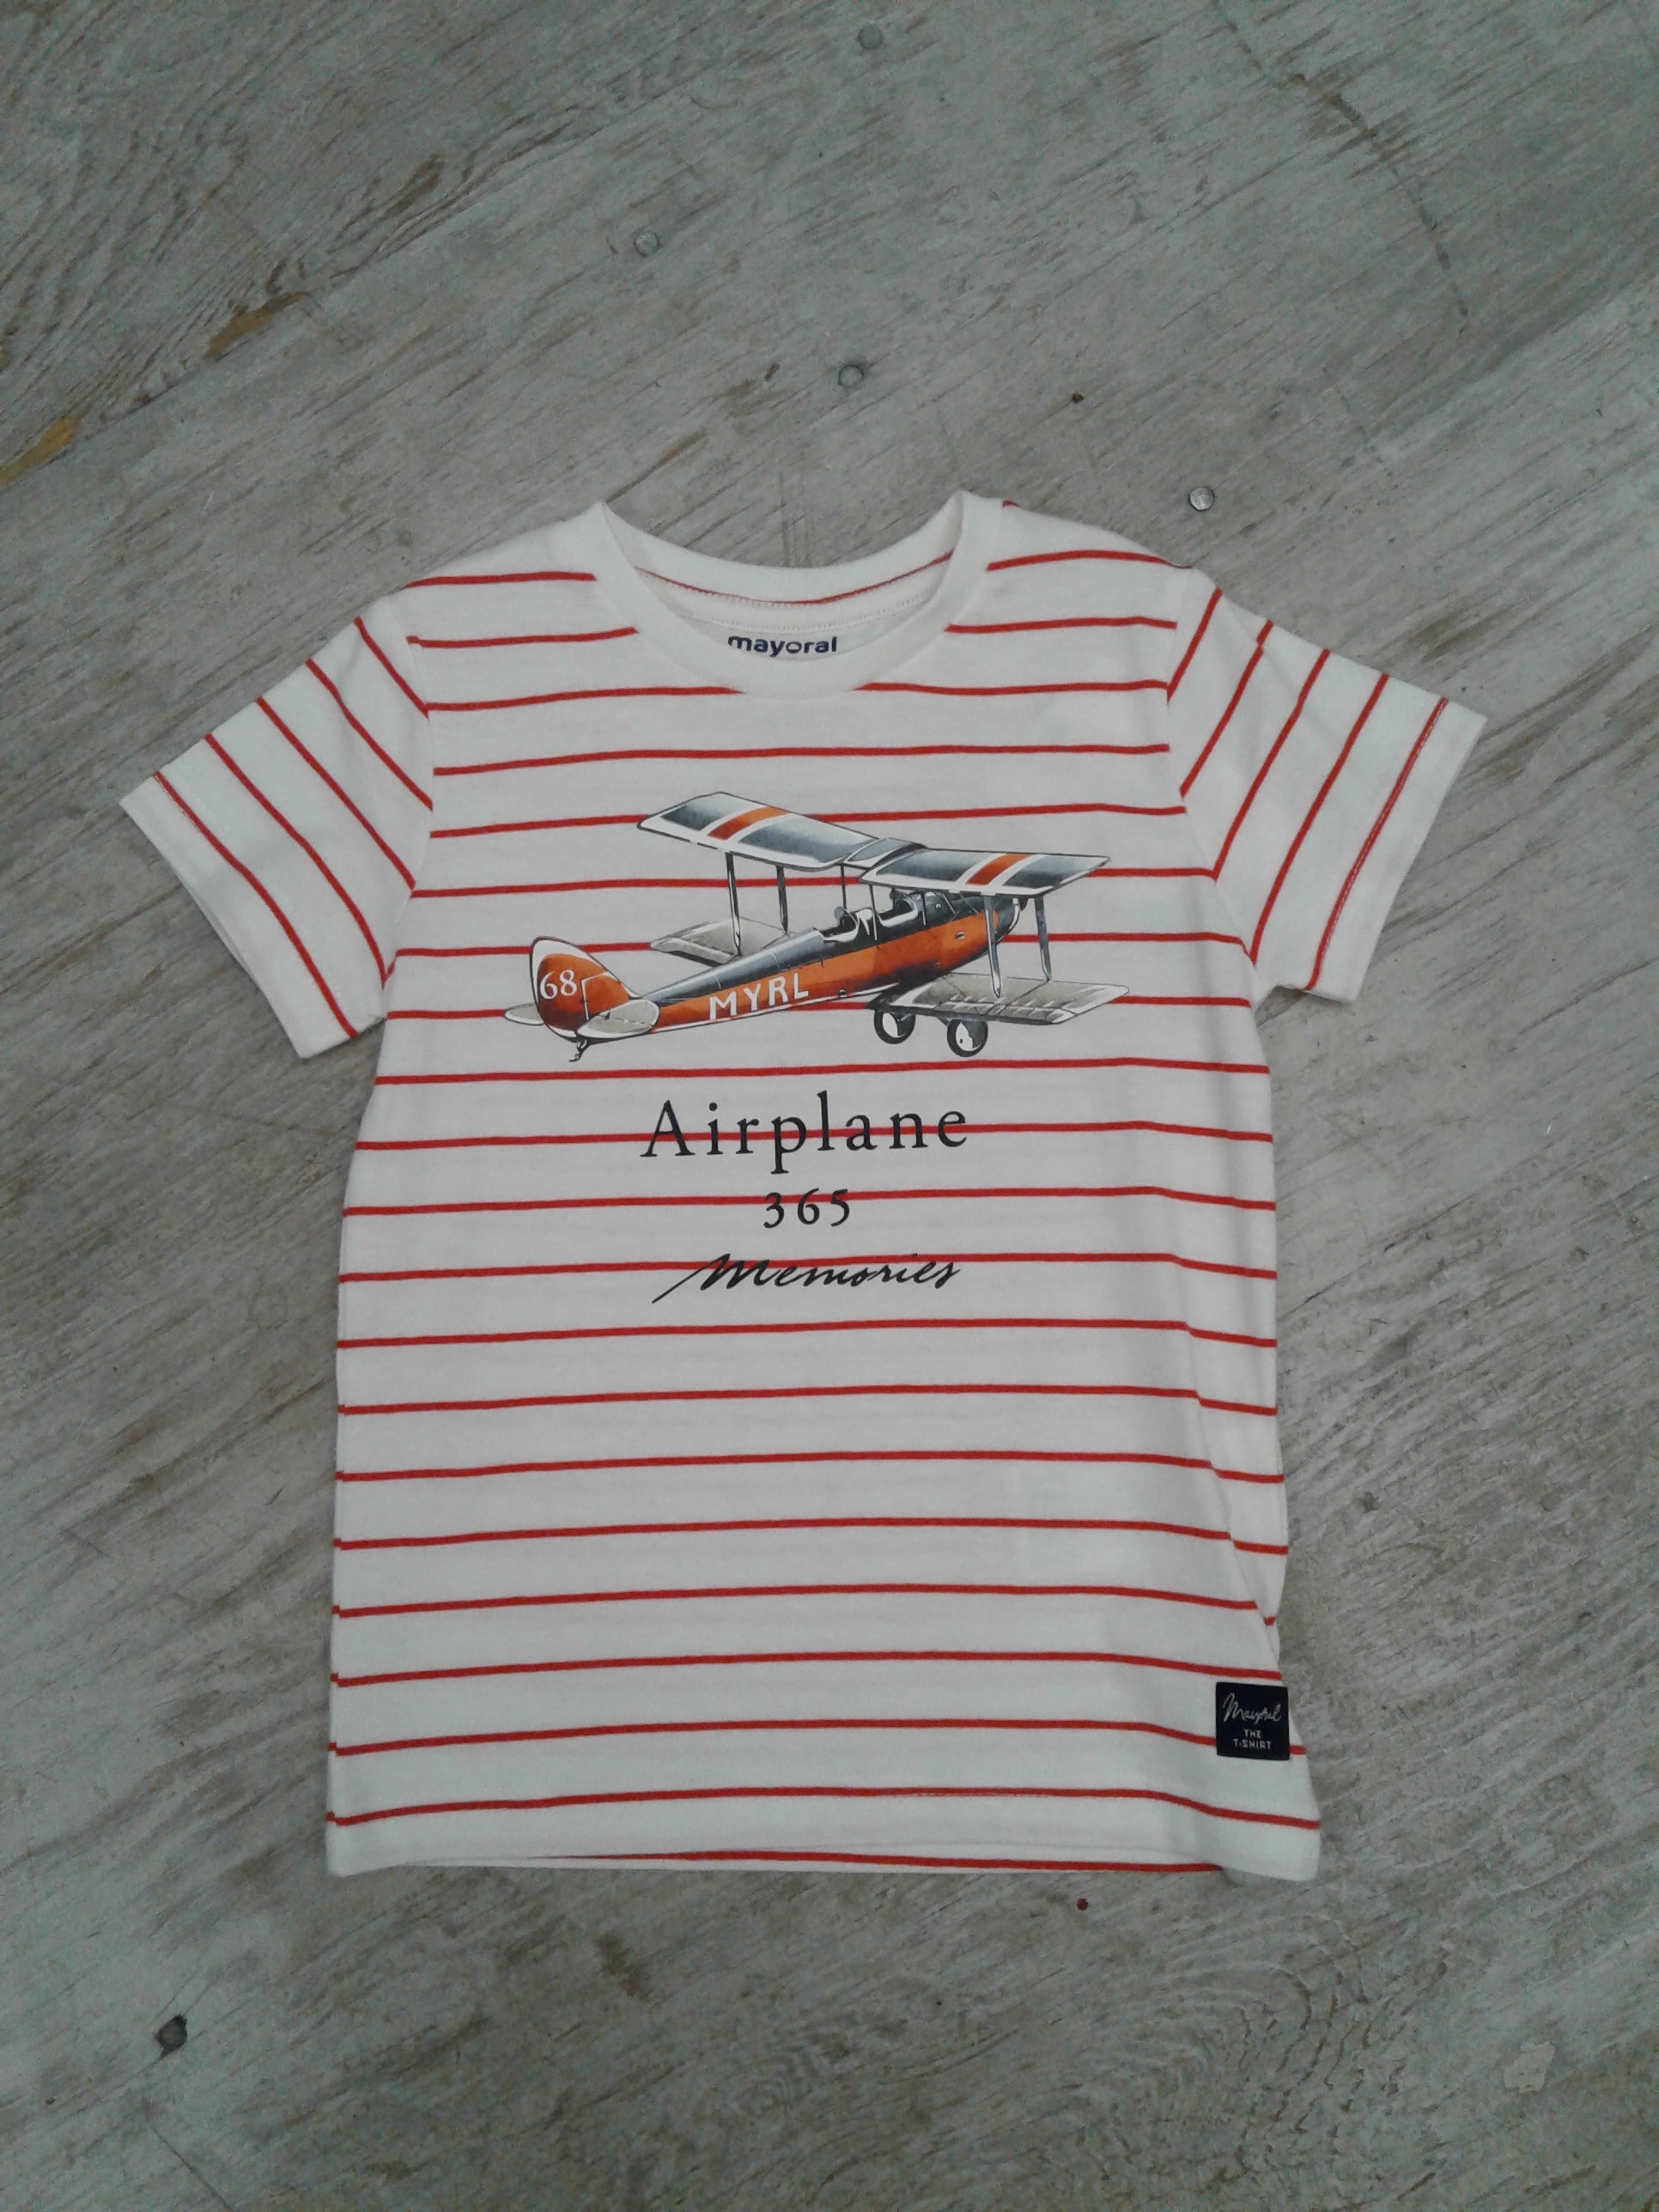 All cotton Airplane Tshirt